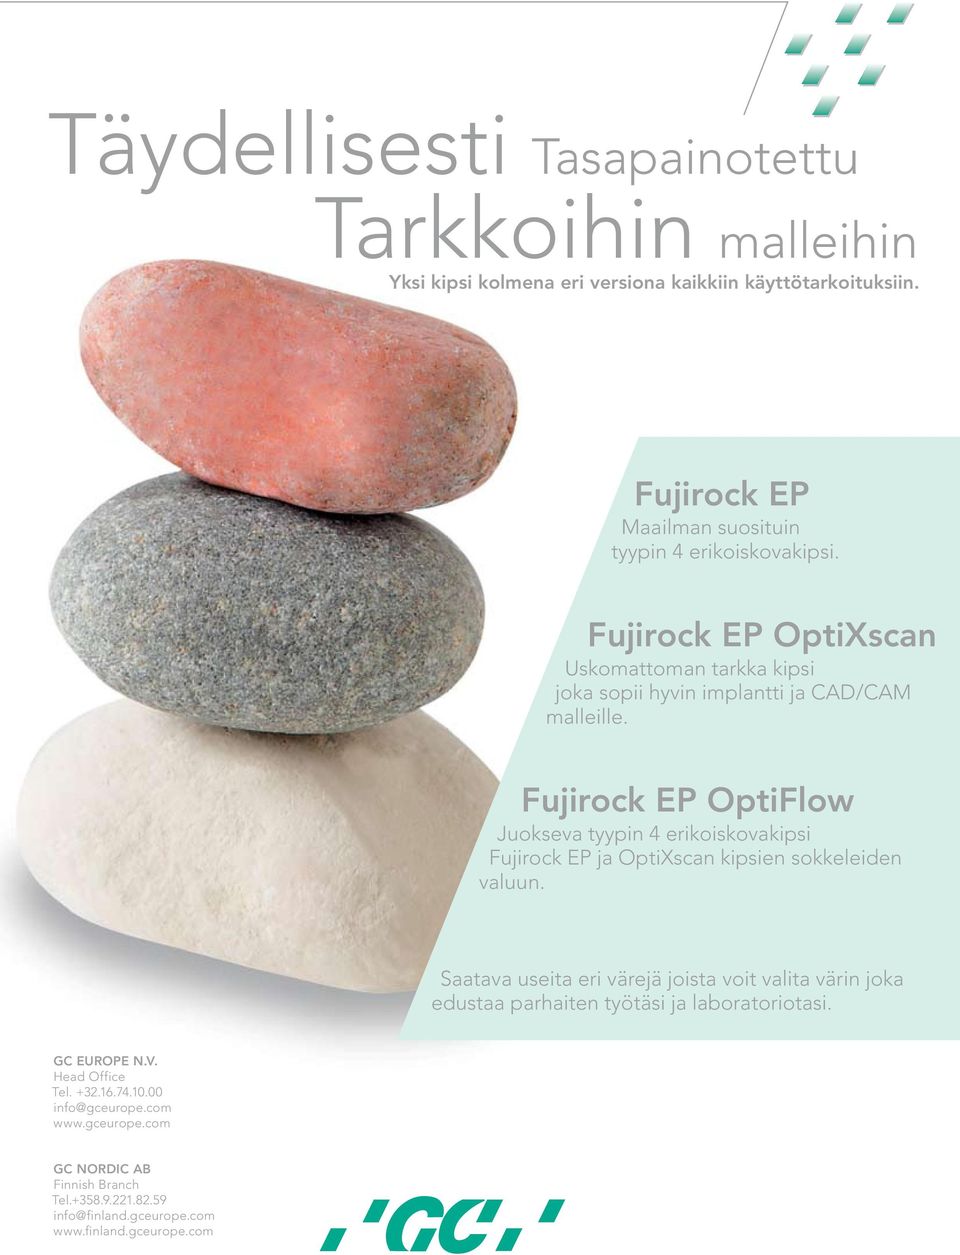 Fujirock EP OptiFlow Juokseva tyypin 4 erikoiskovakipsi Fujirock EP ja OptiXscan kipsien sokkeleiden valuun.